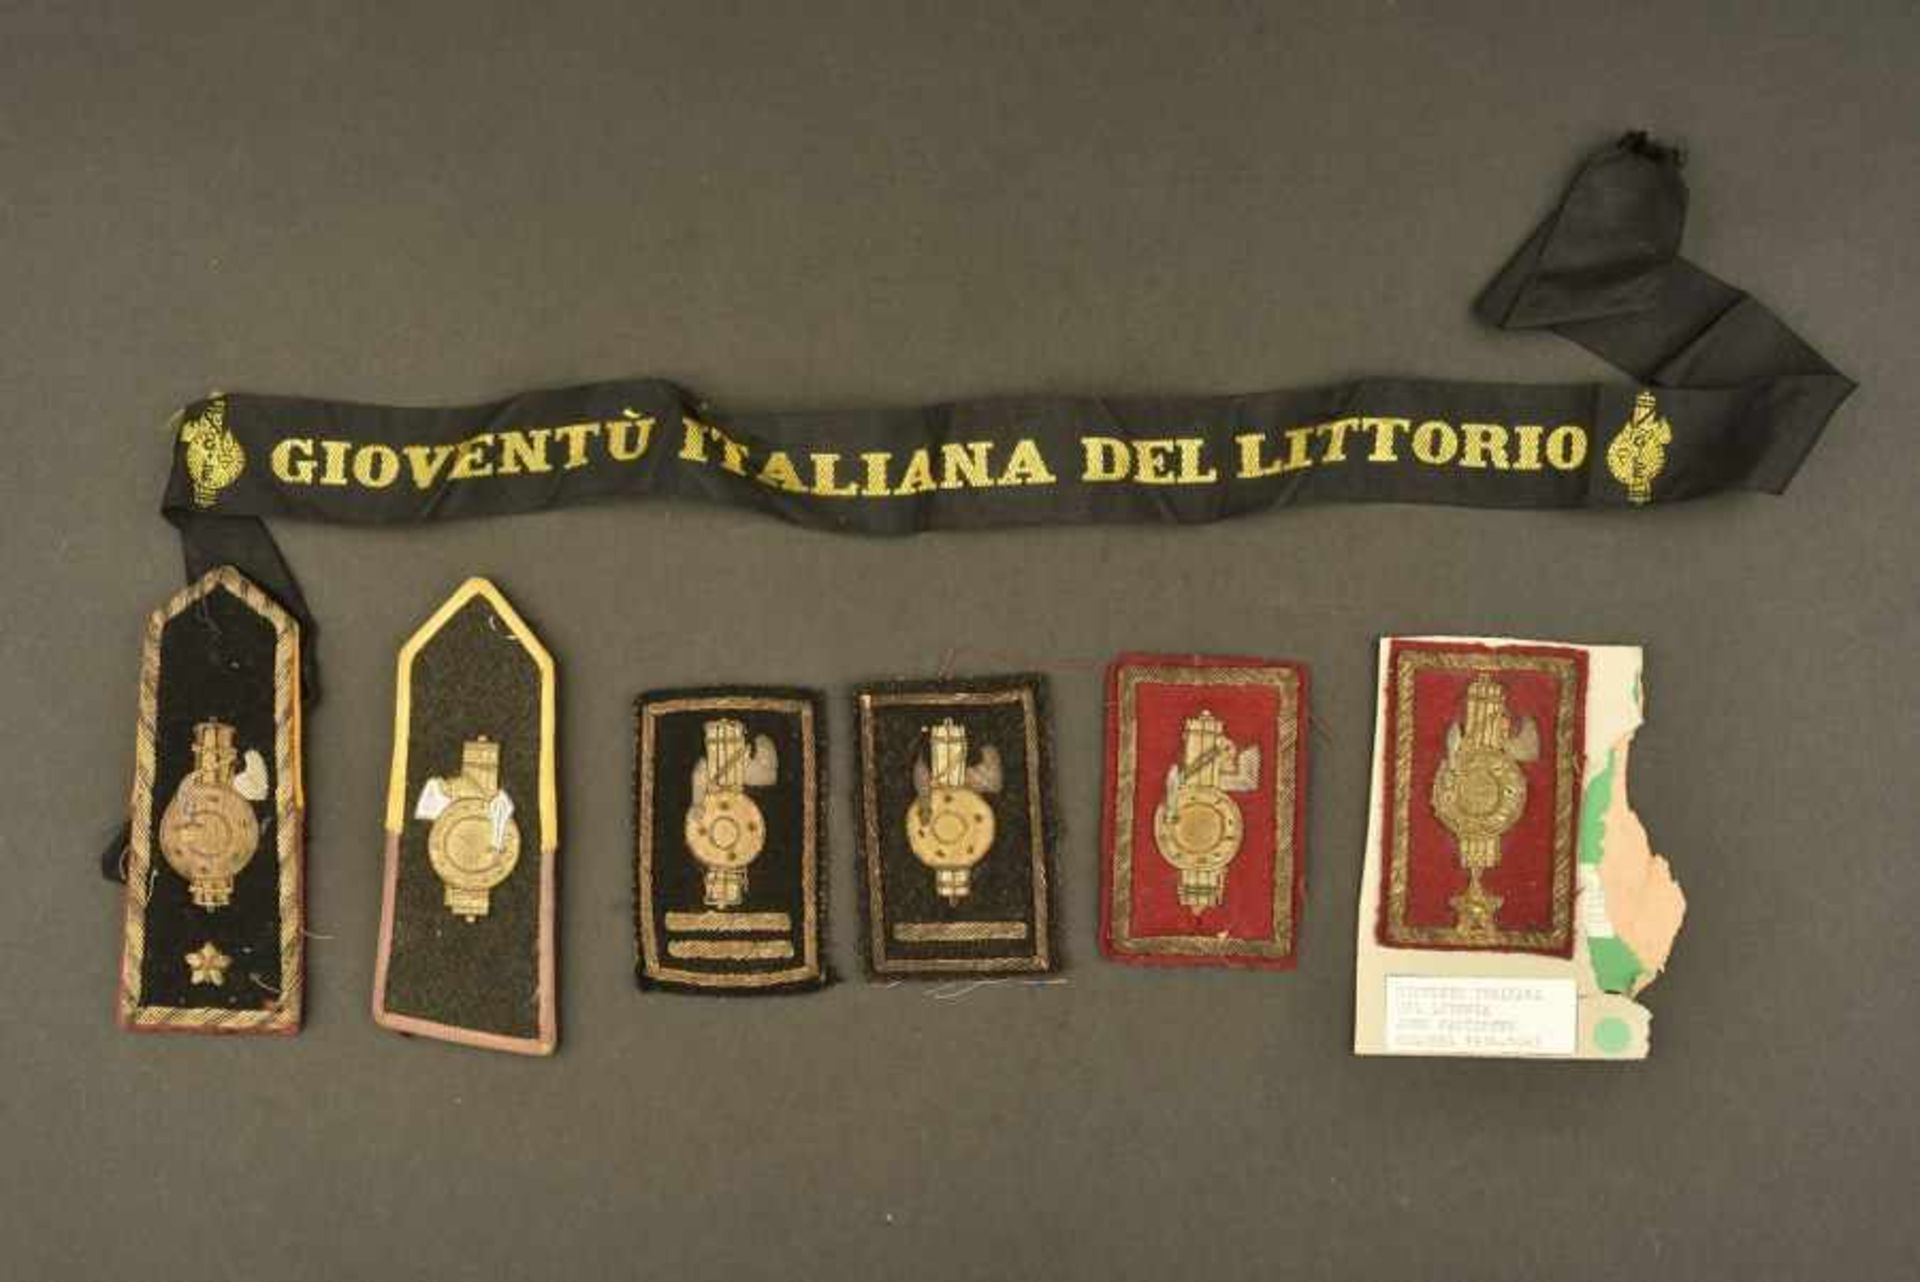 Ensemble de passementerie des Gioventu Italiana Del LitoriaComprenant deux insignes de grades brodés